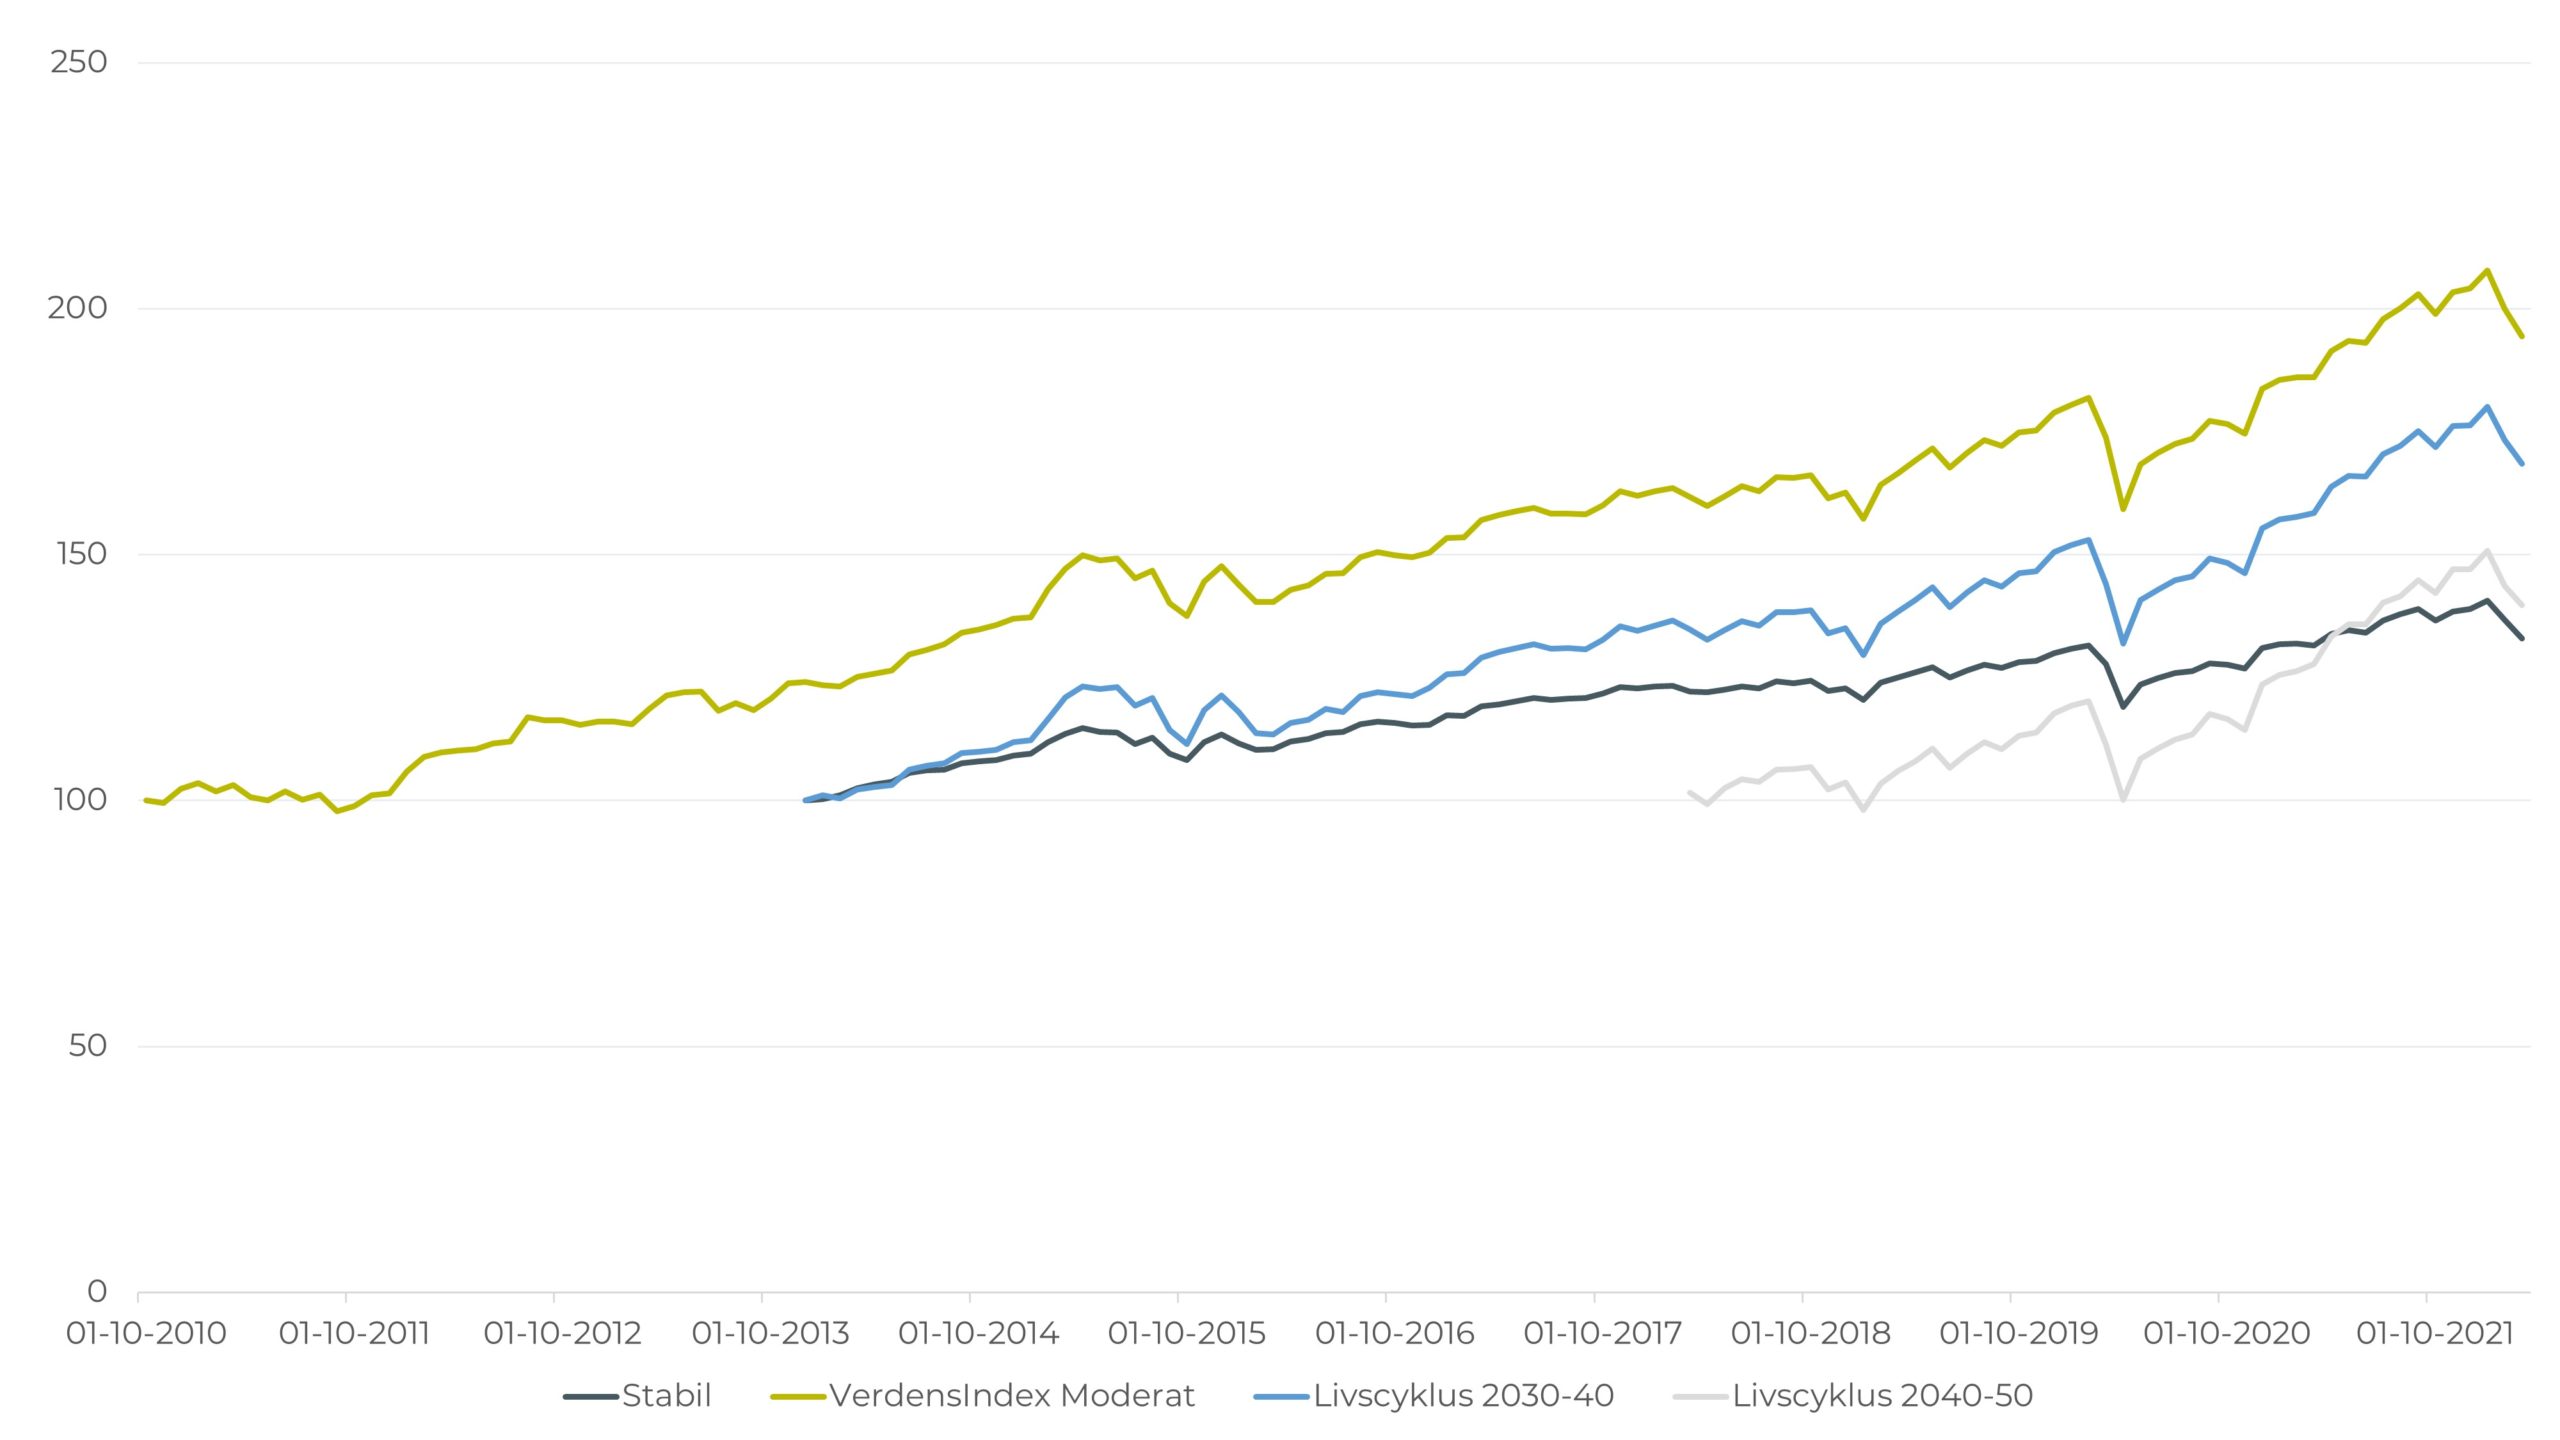 Graf viser den historiske udvikling på Optimal Invests afdelinger